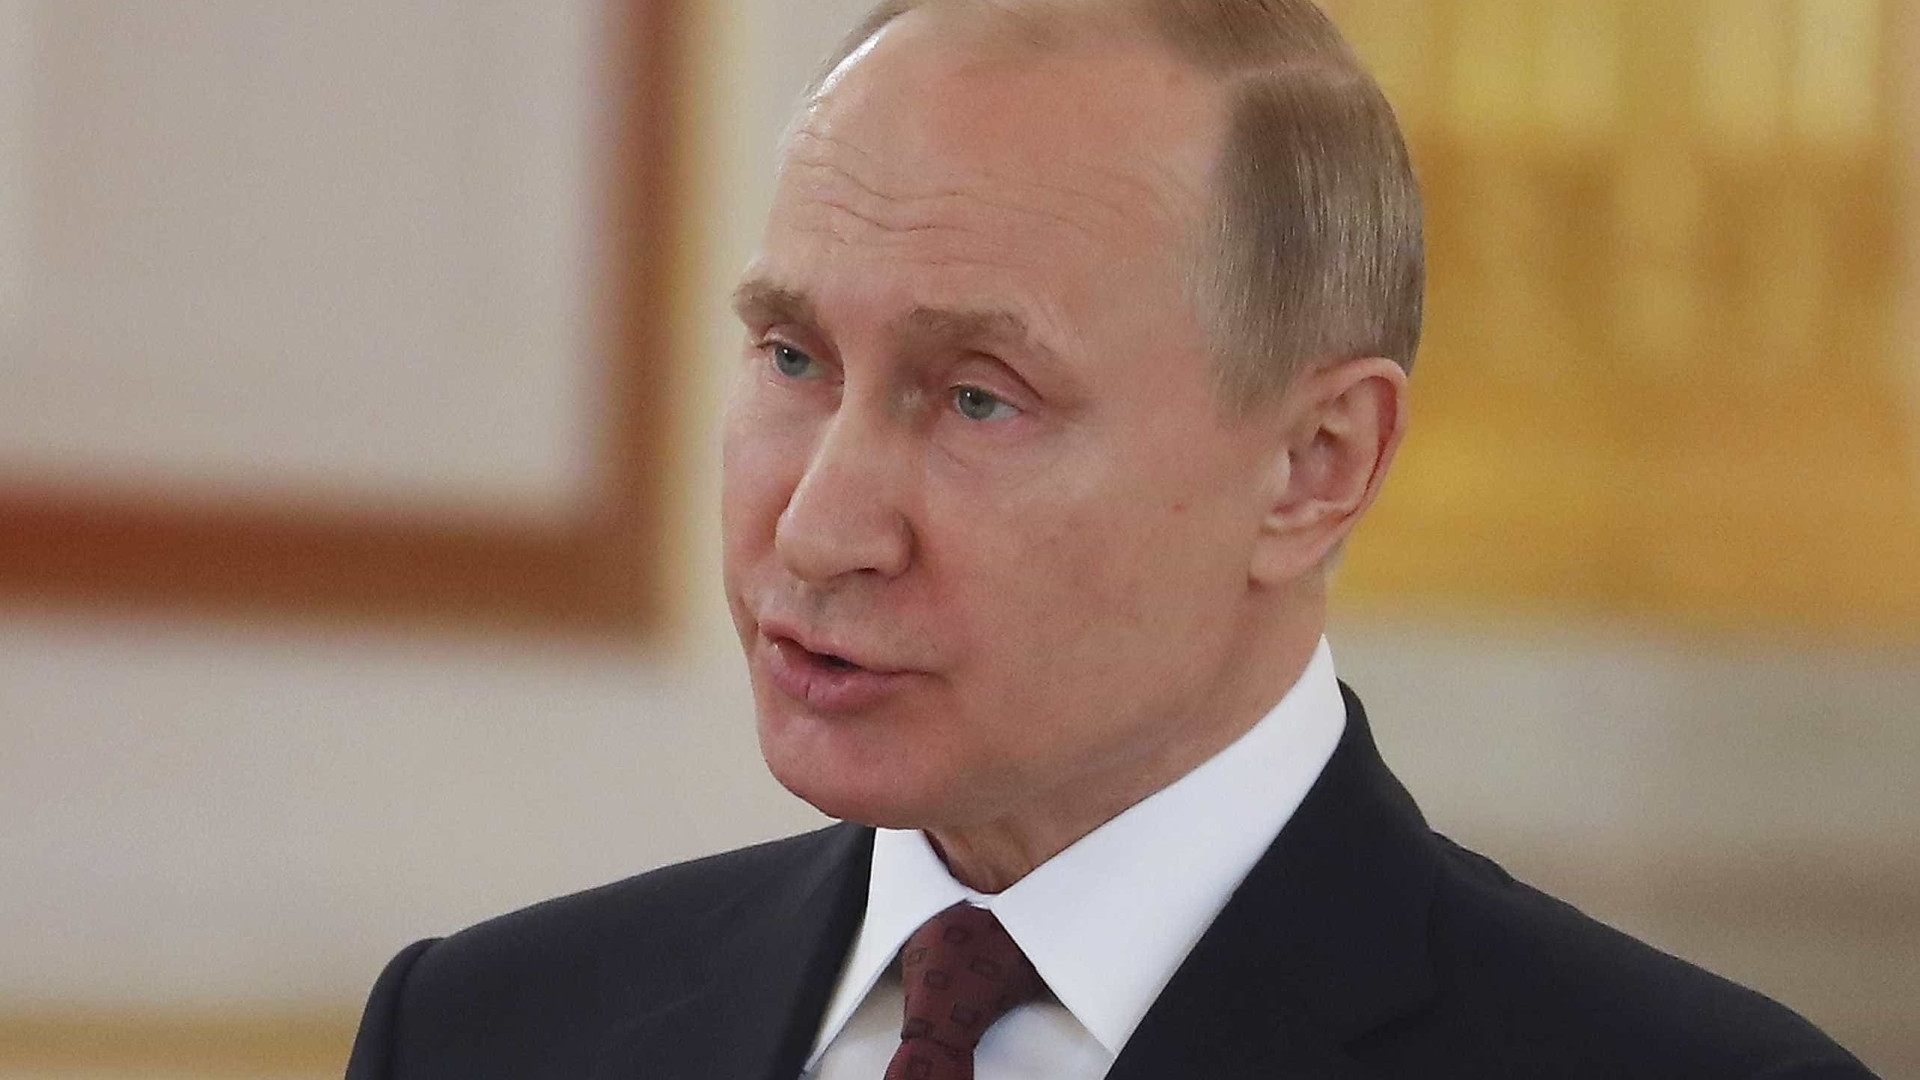 Putin pede 'bom senso' nas relações internacionais